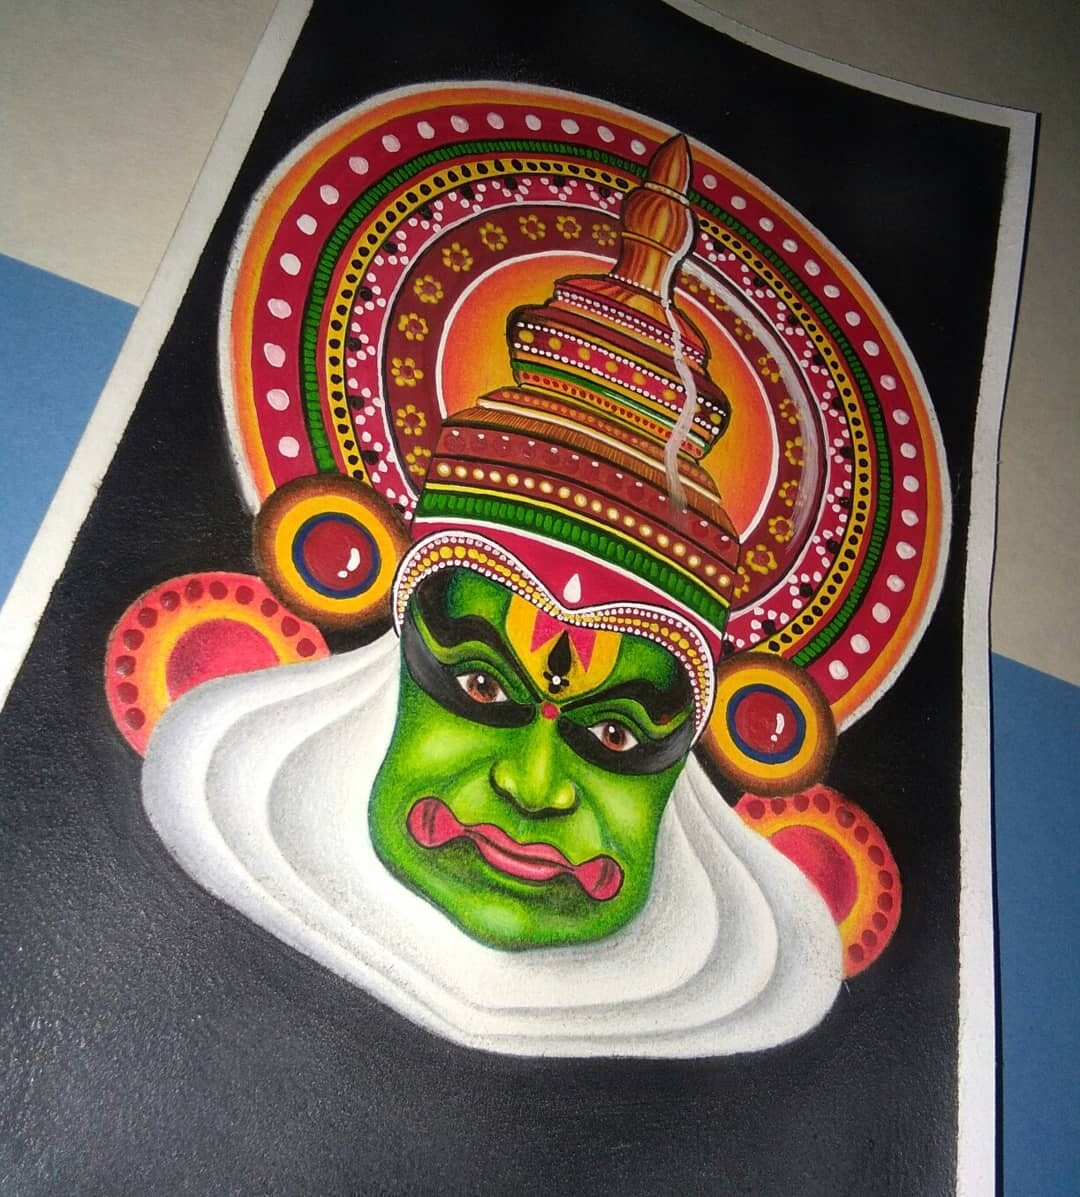 Kathakali Drawing Images - Free Download on Freepik